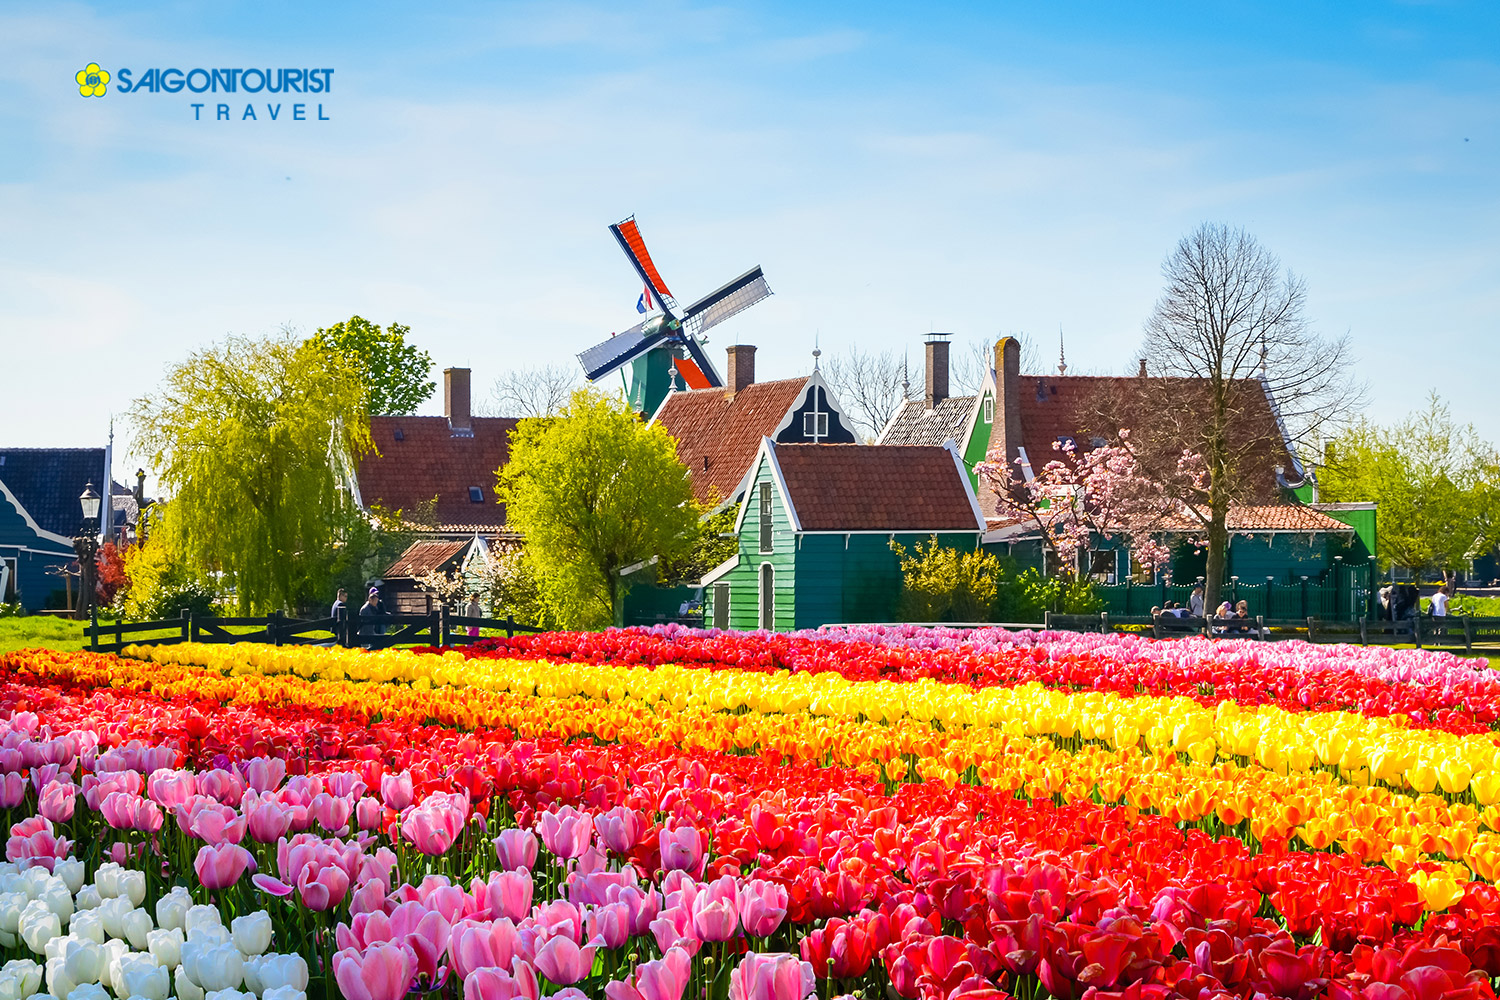 Lễ hội hoa Tulip Hà Lan